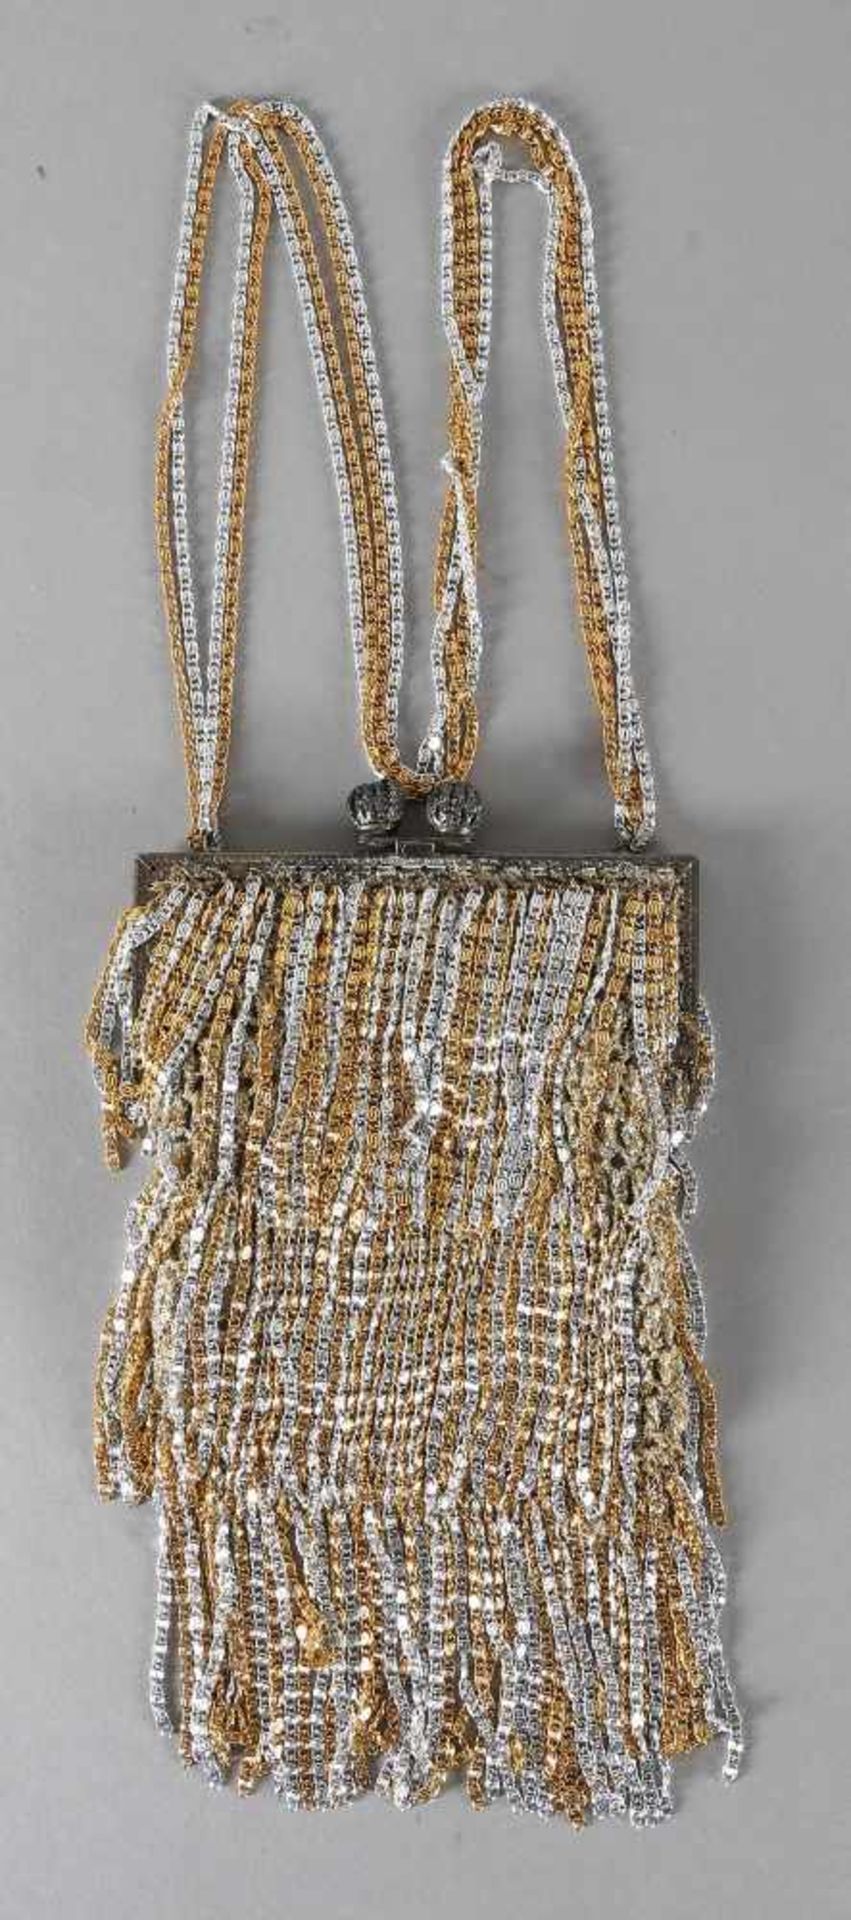 Handtasche, Louis Azzaro Paris, Mitte 20. Jh.Stoffbeutel mit Metallbügel, daran hängende Kaskaden